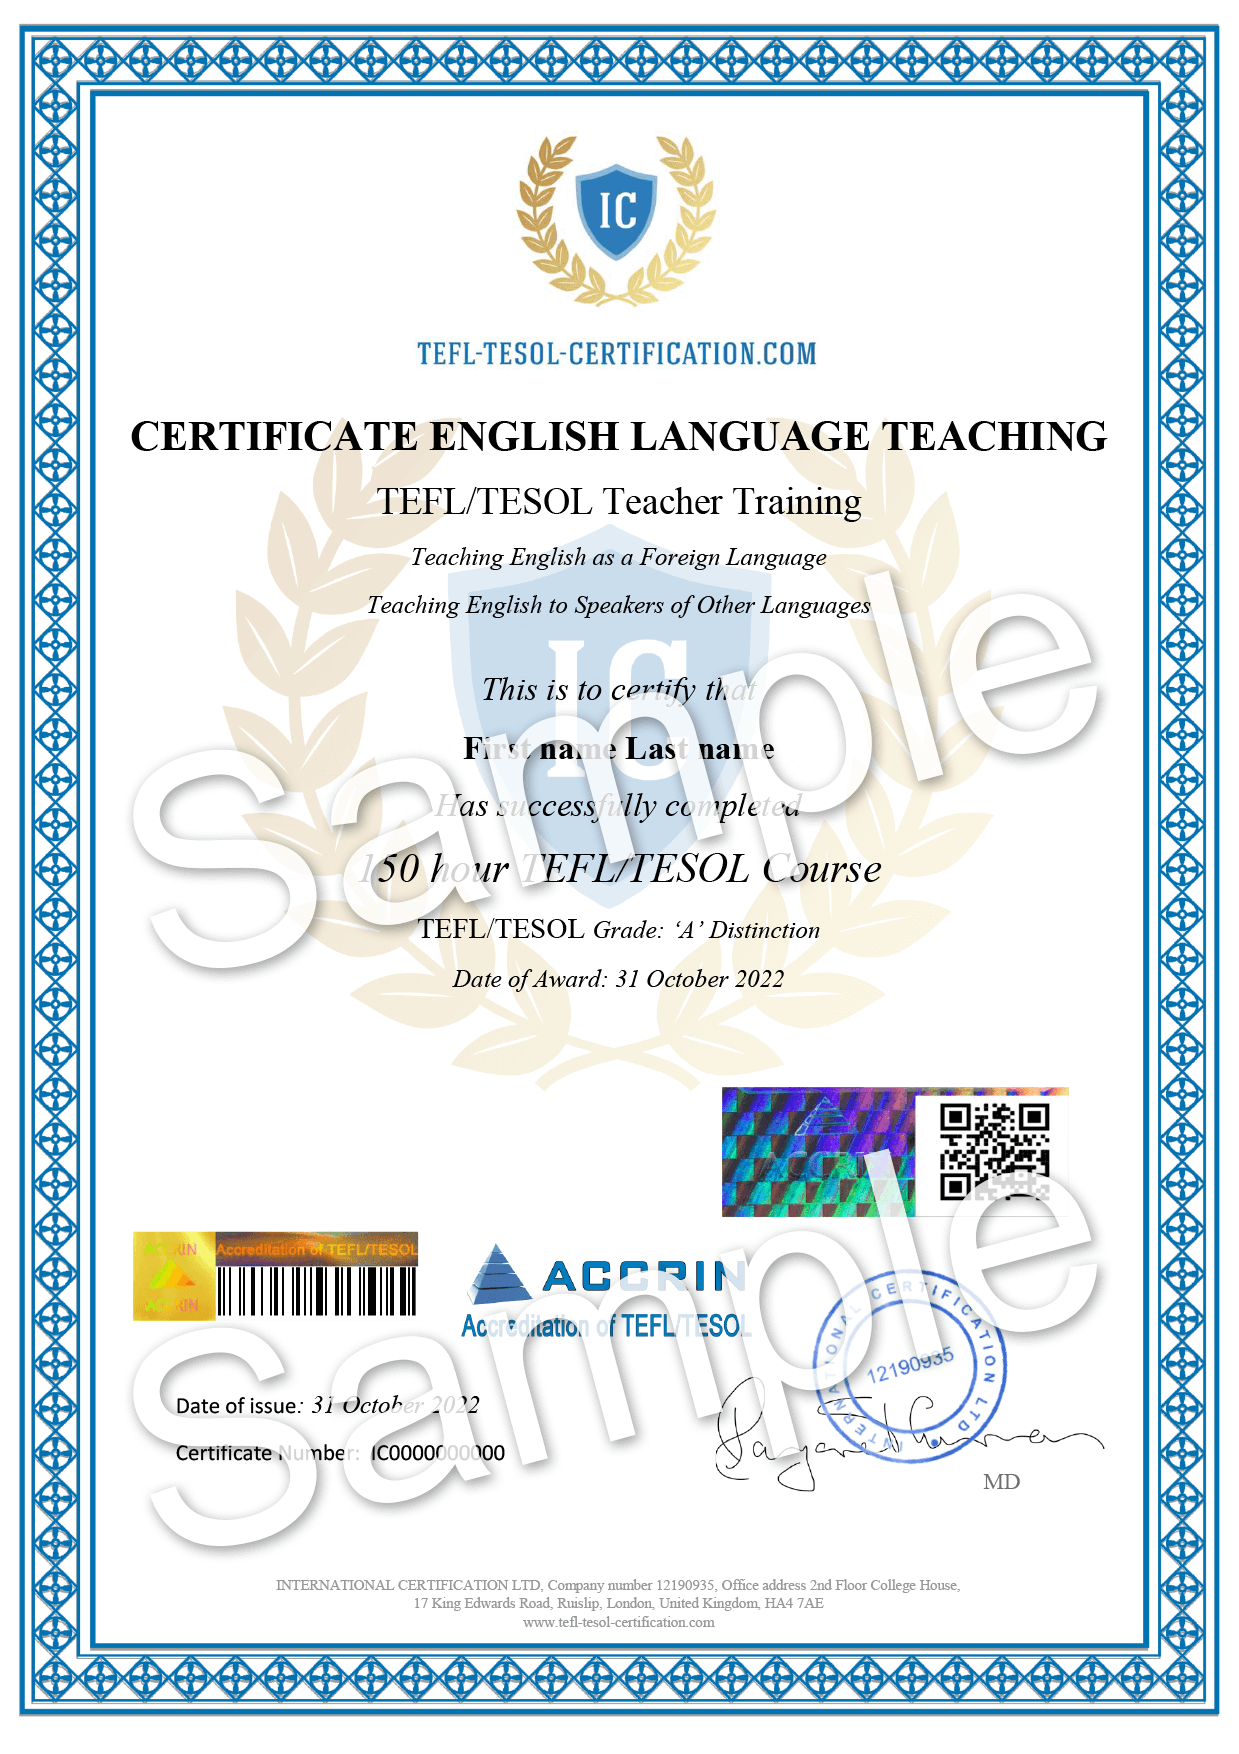 TEFL / TESOL certificate